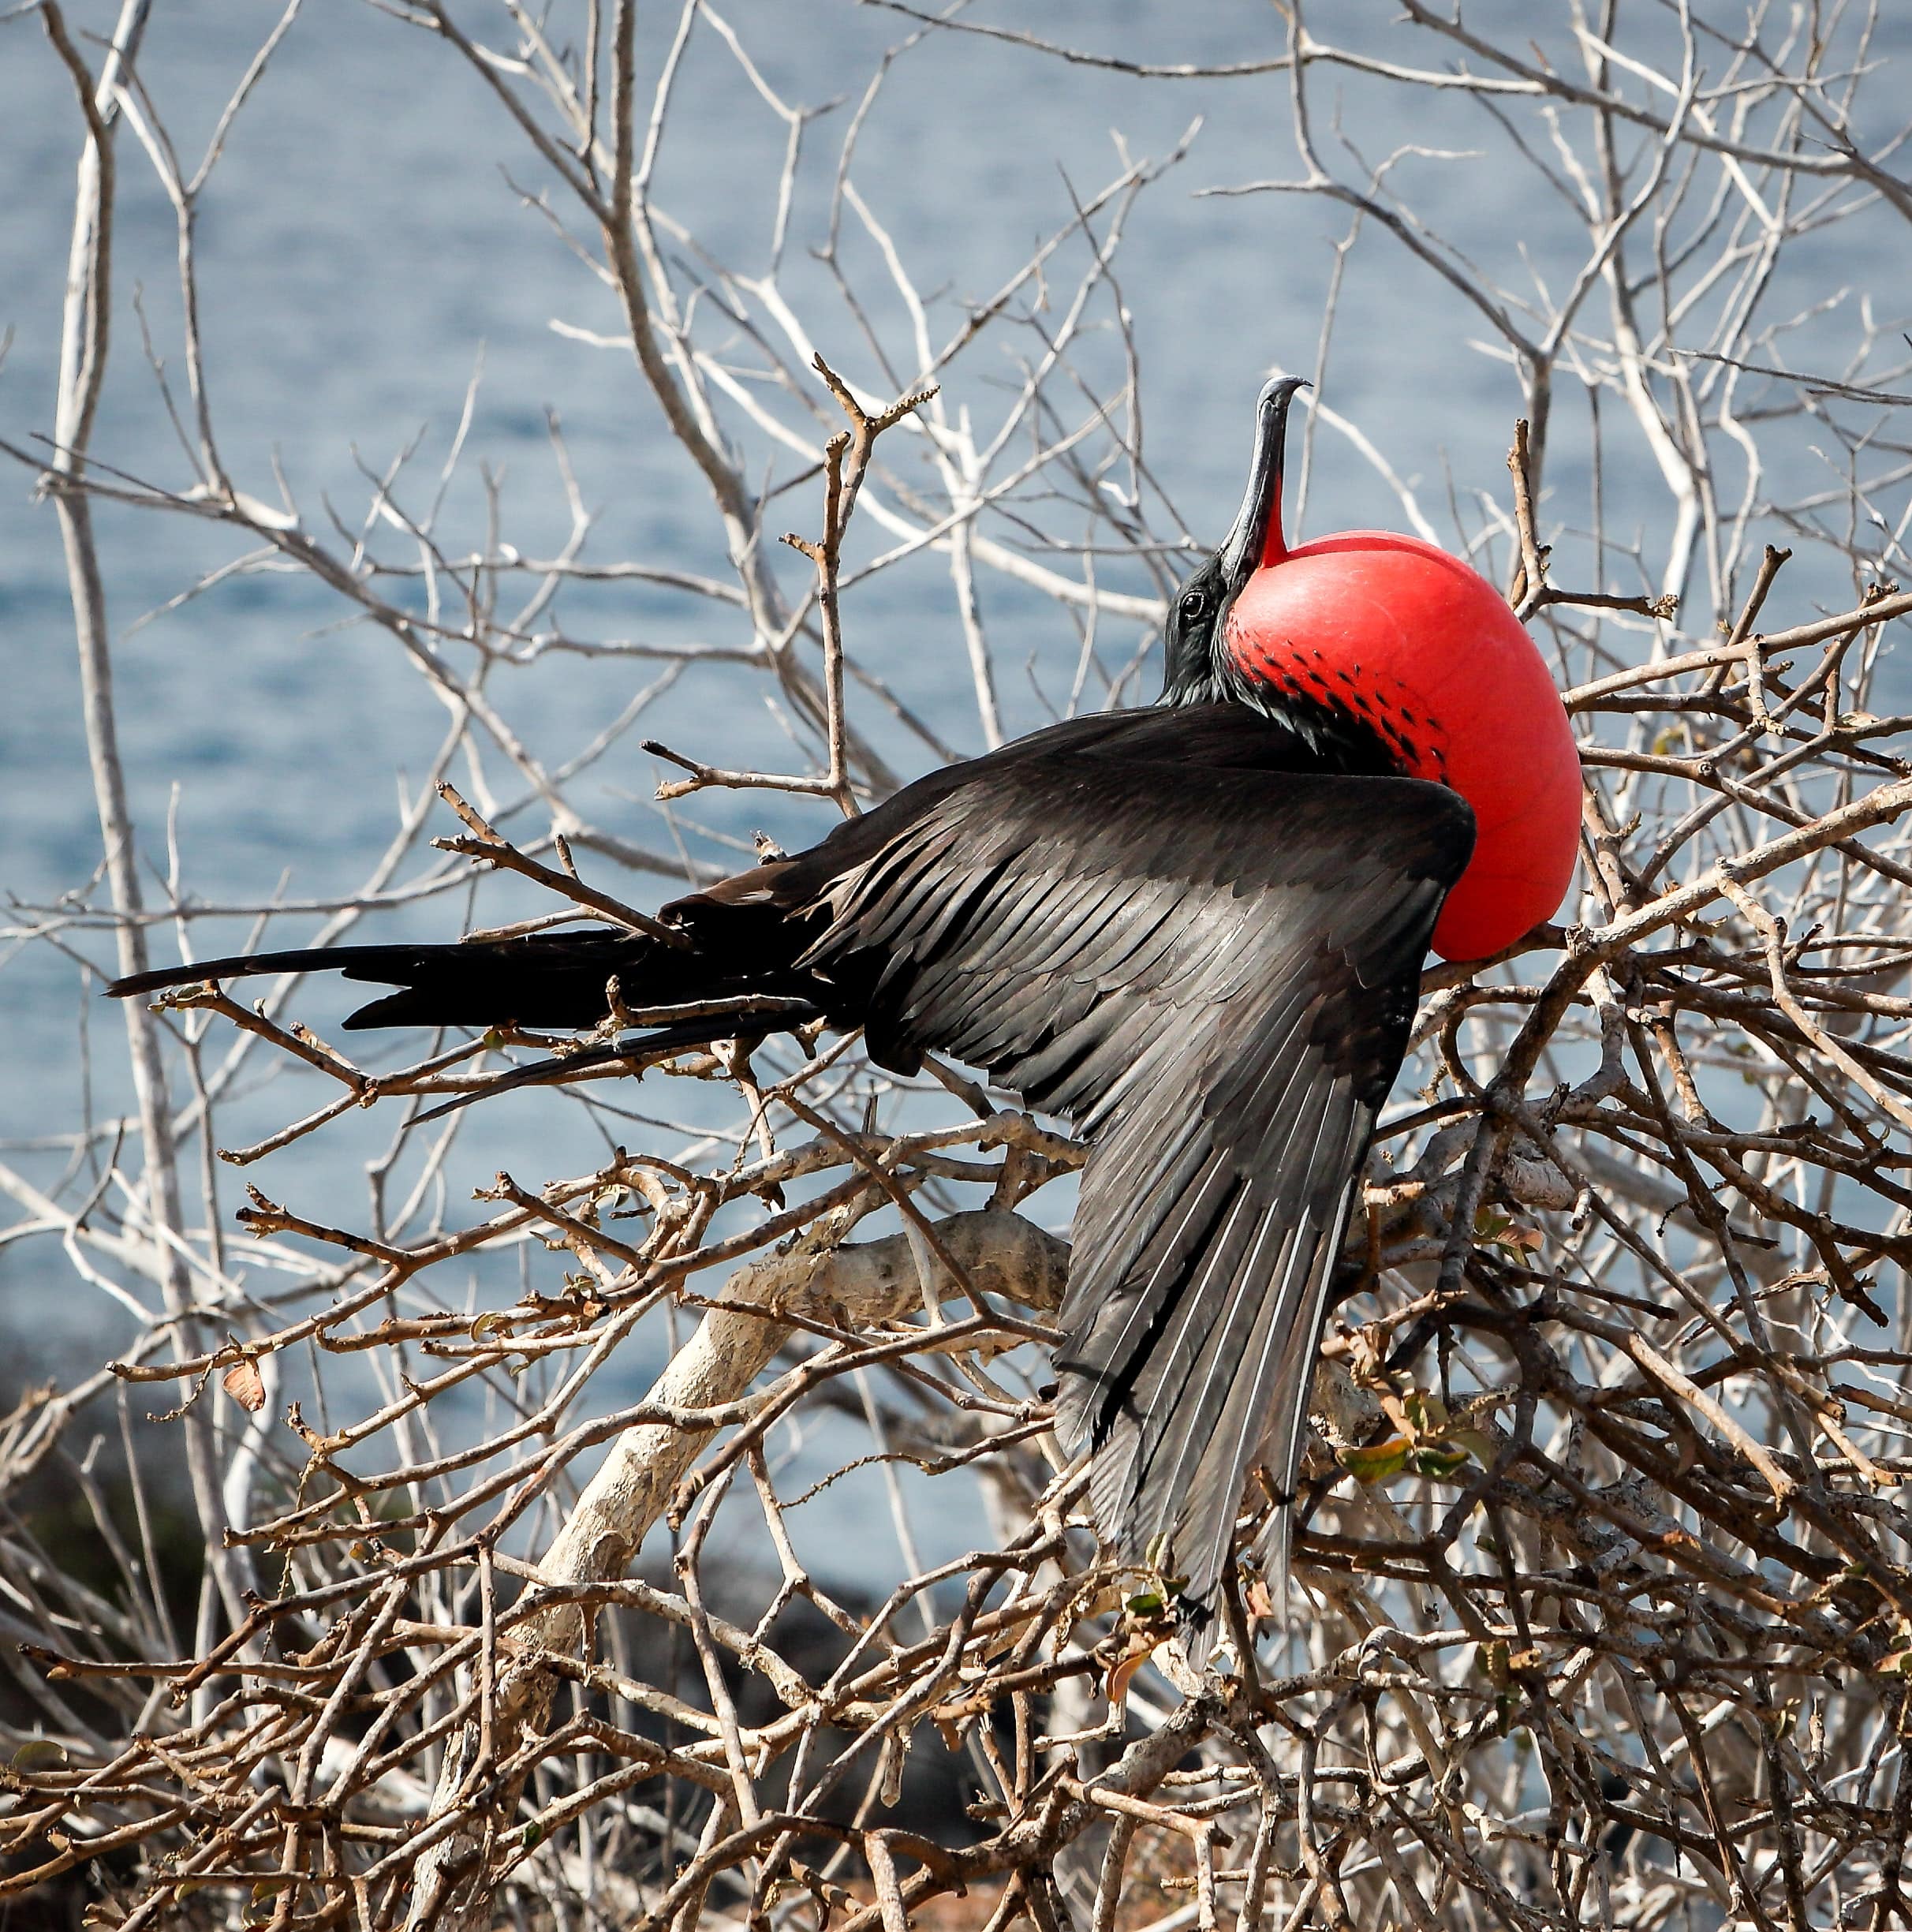 Frigate bird of the Galapagos Islands